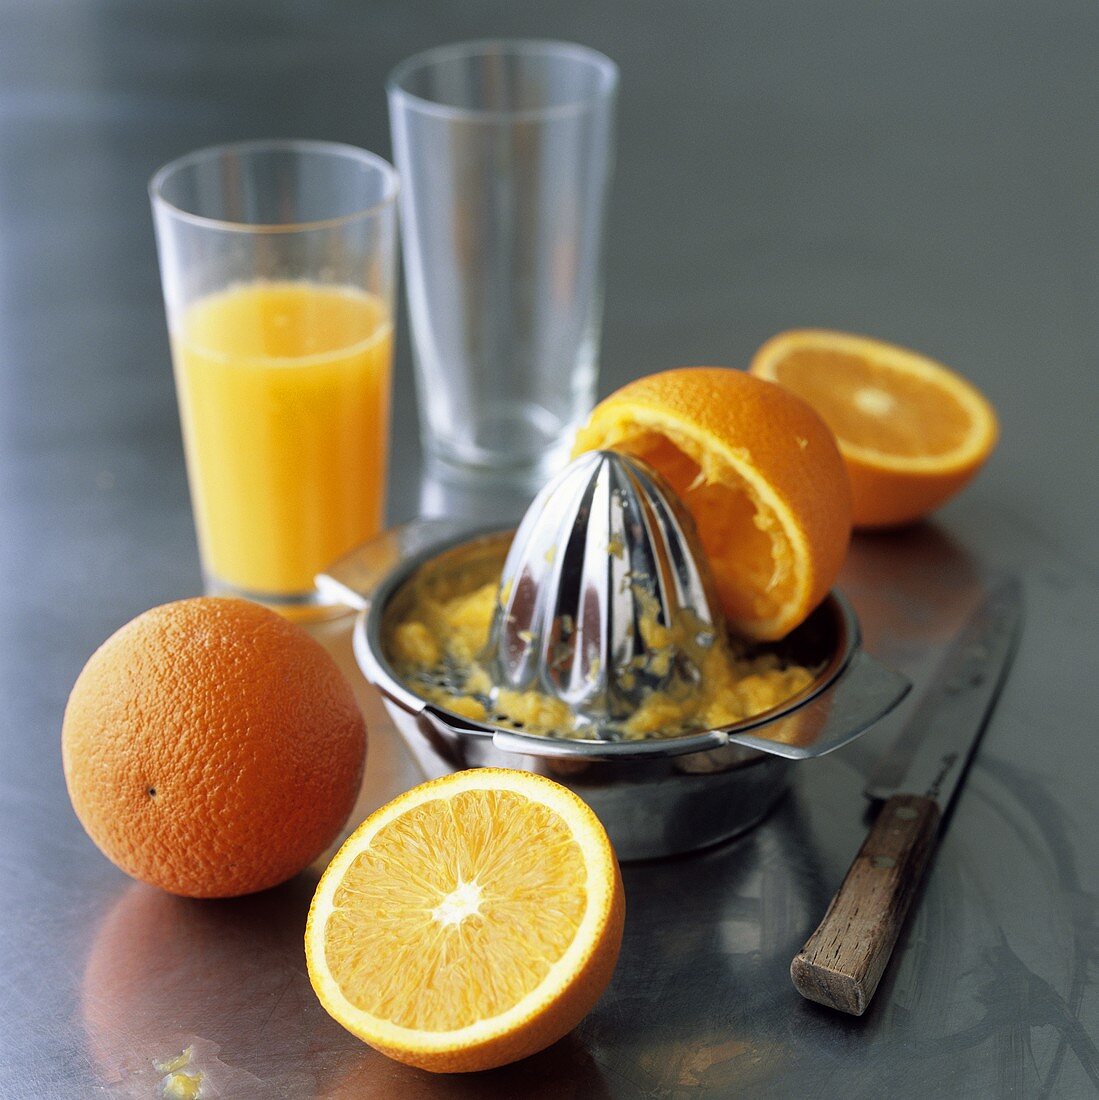 Oranges, citrus squeezer and freshly squeezed orange juice